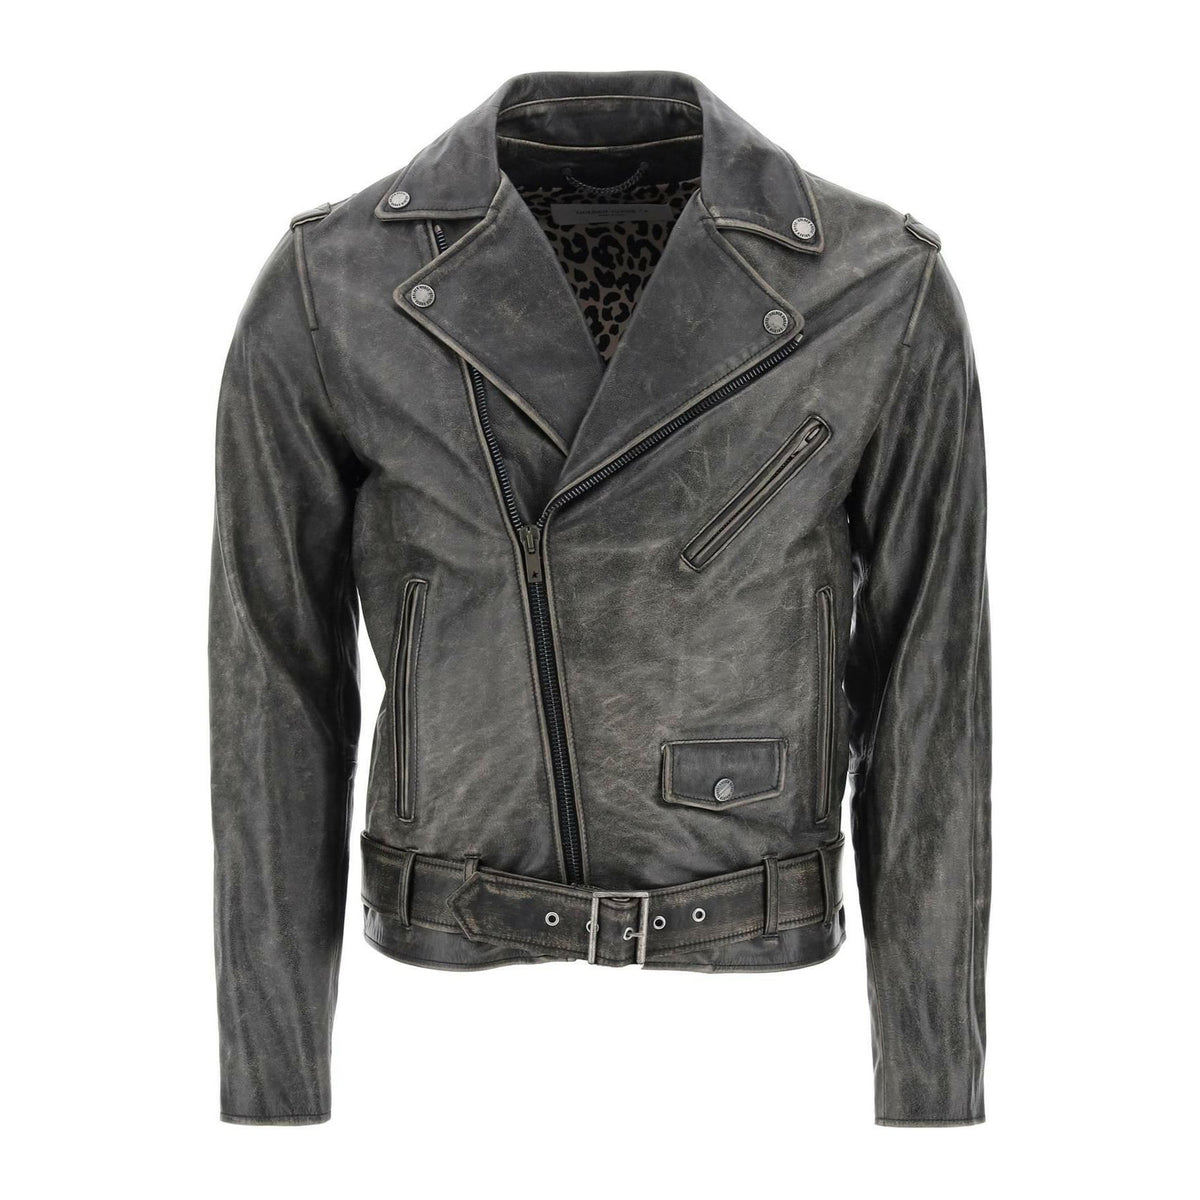 Vintage Effect Leather Biker Jacket GOLDEN GOOSE JOHN JULIA.